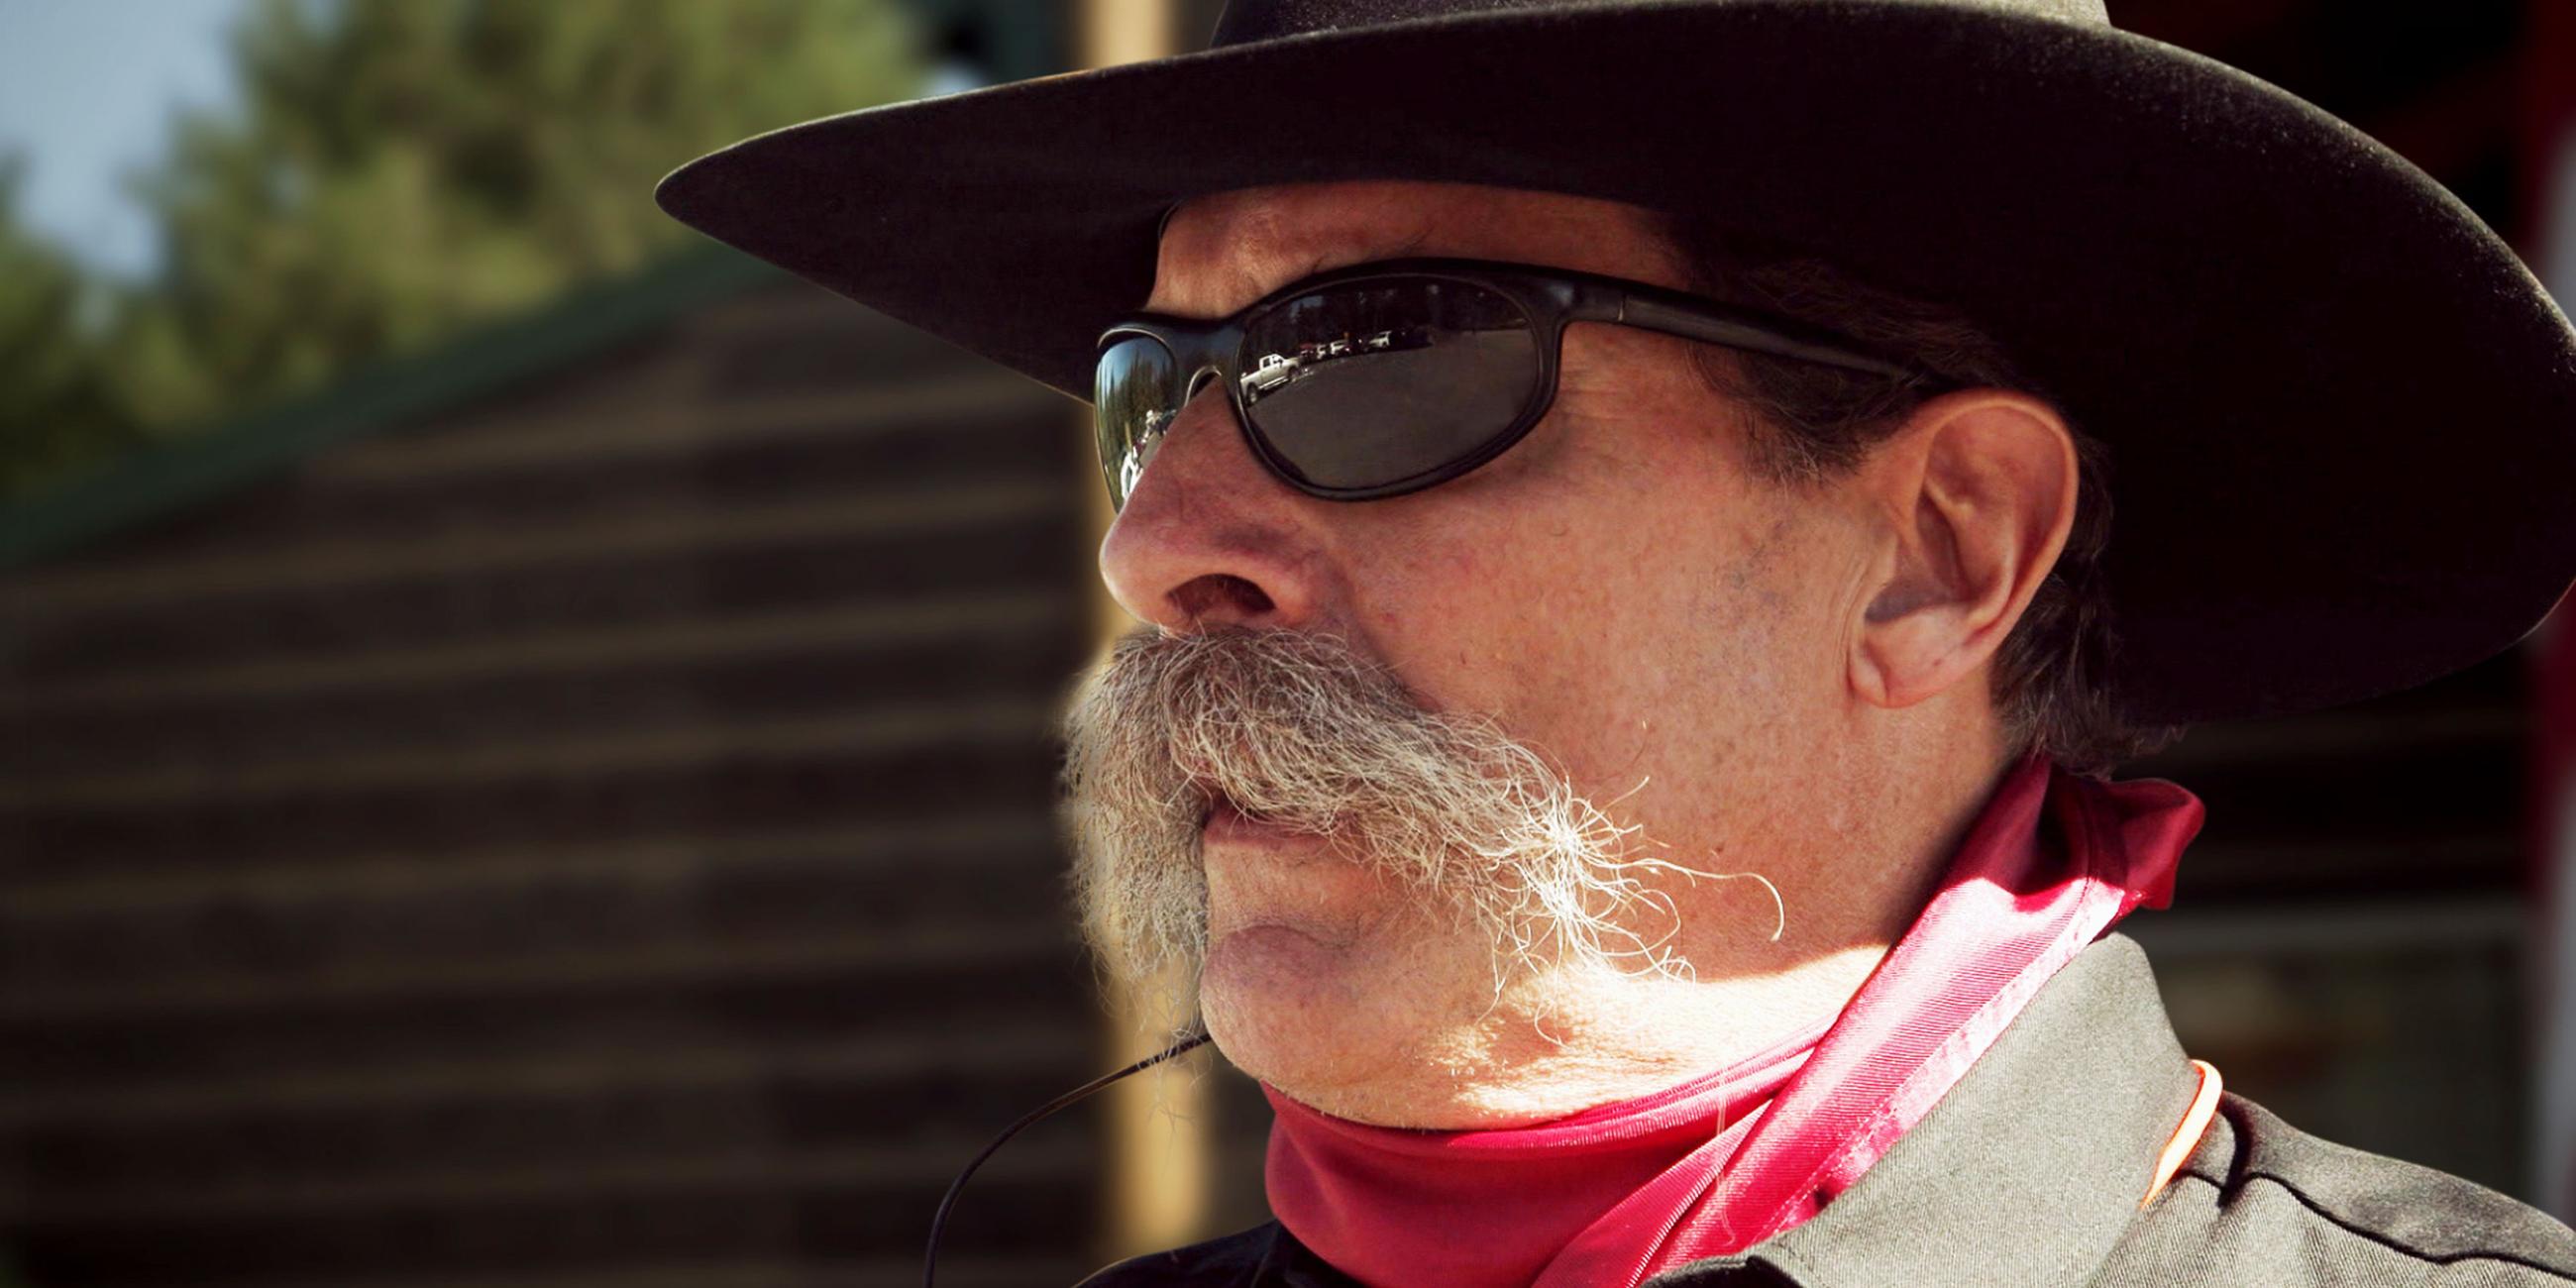 Clyde Tinley, der Mitglied in der "North Idaho Miliz", im Profil im Cowboy-Look mit Sonnenbrille.